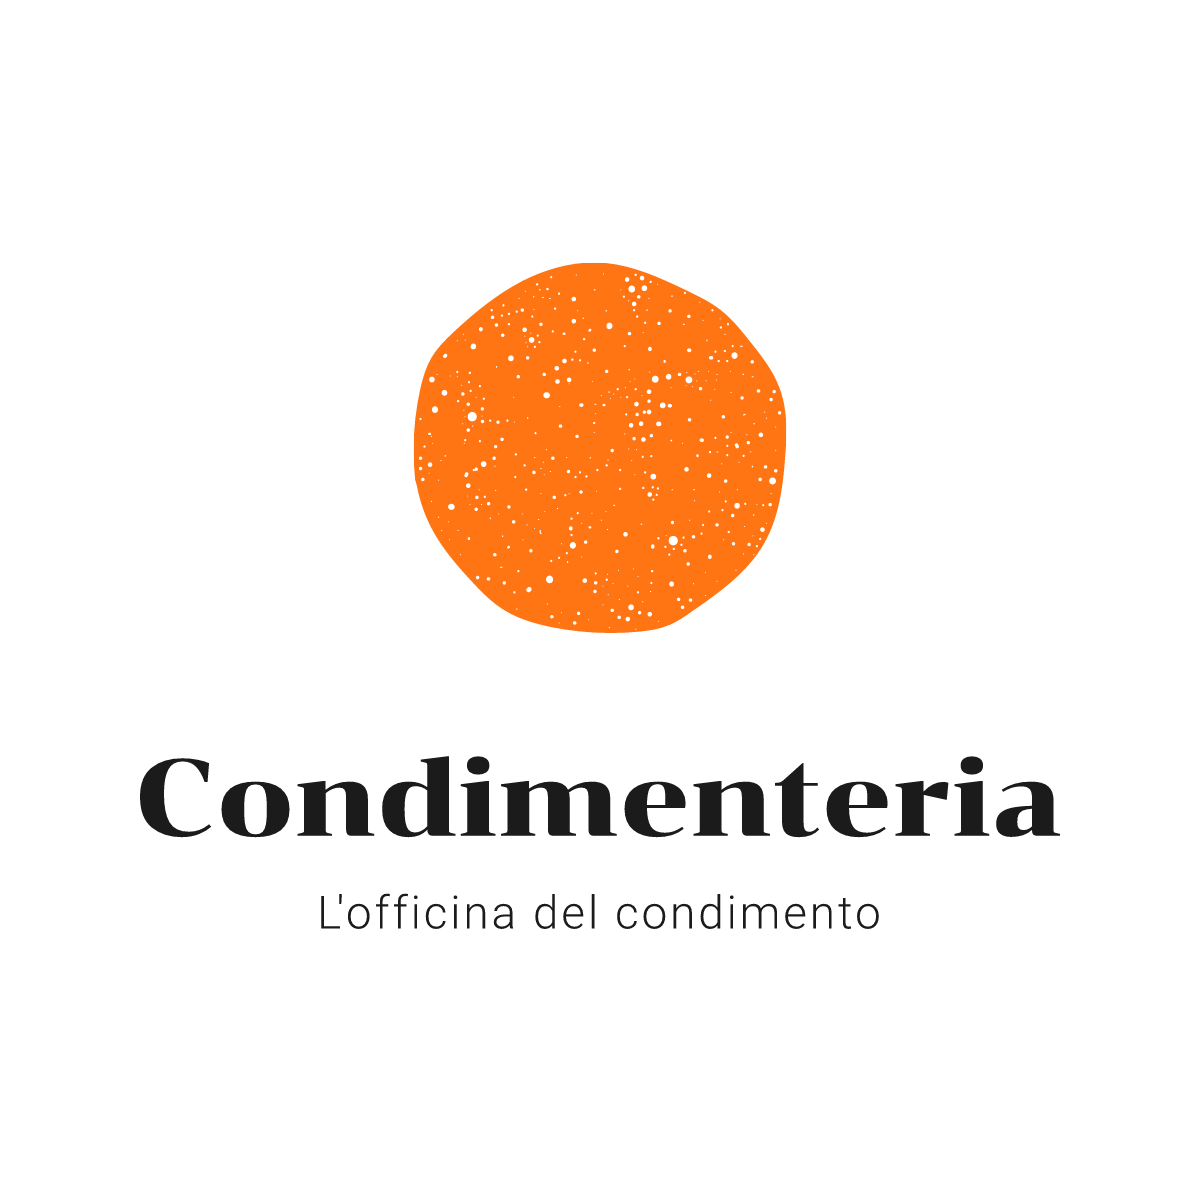 www.condimenteria.com